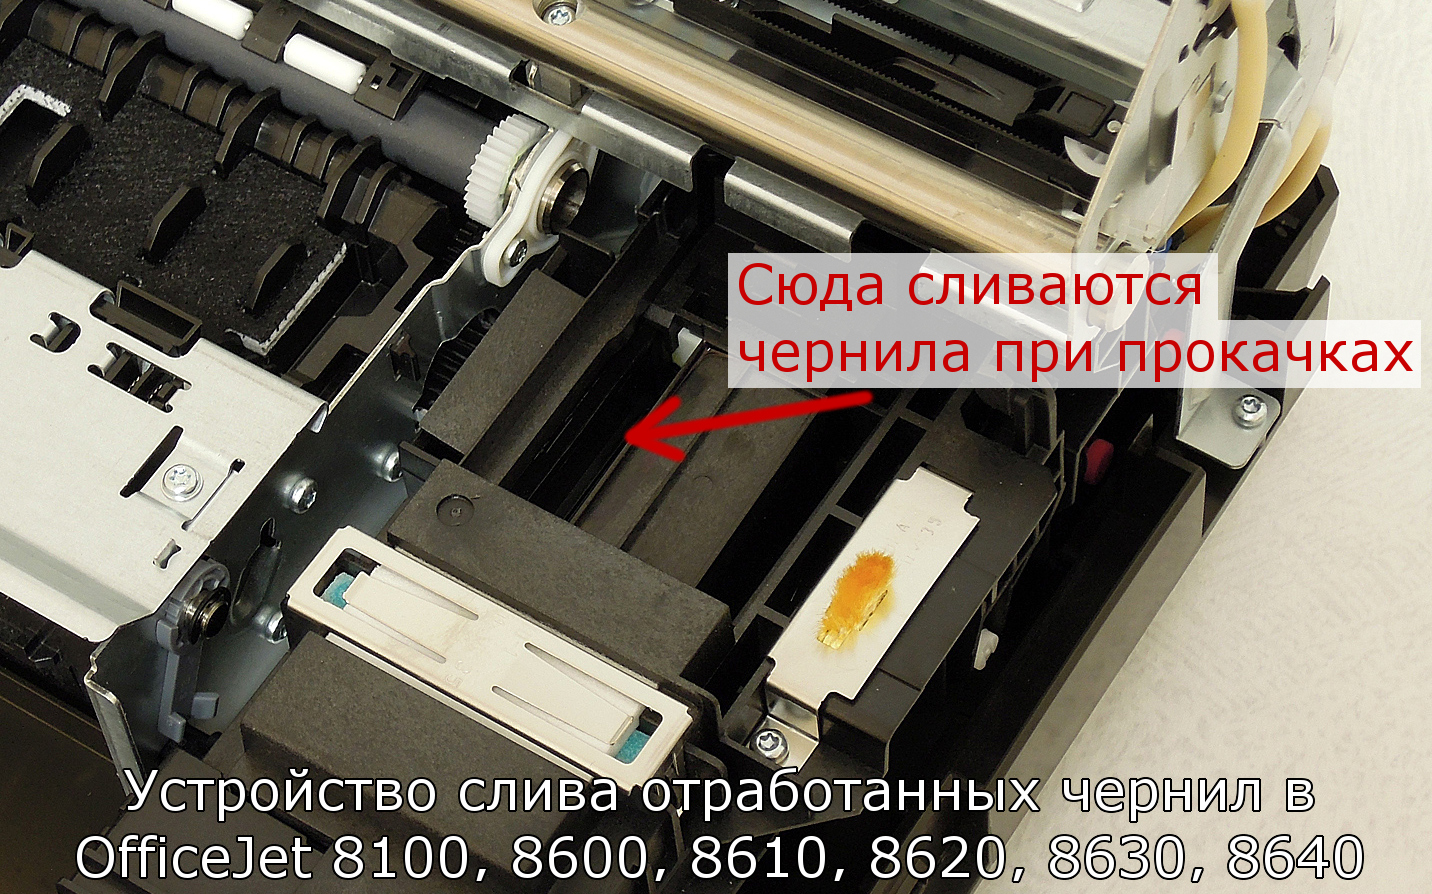 Вывод памперса на принтере Epson. Как сделать сток отработанных чернил